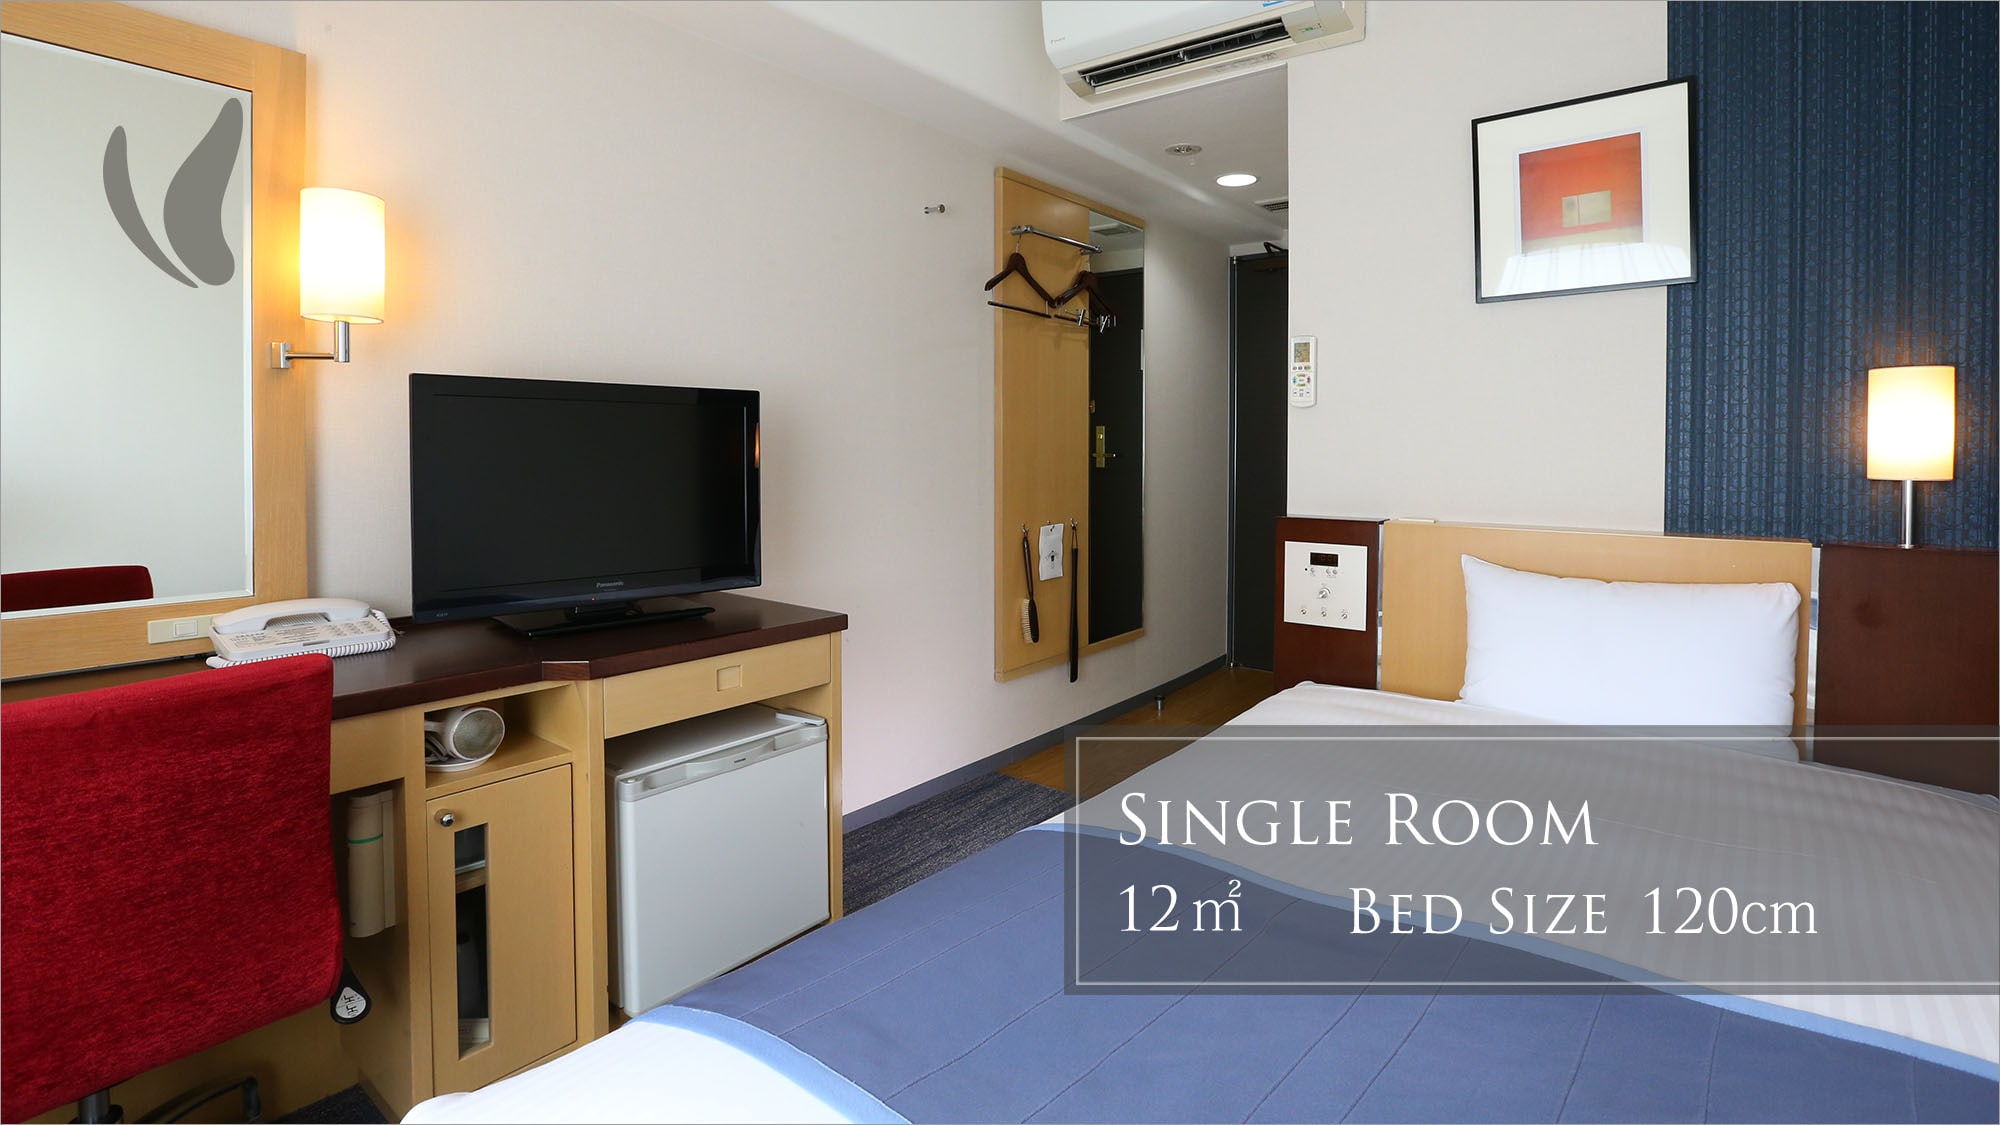  Single room